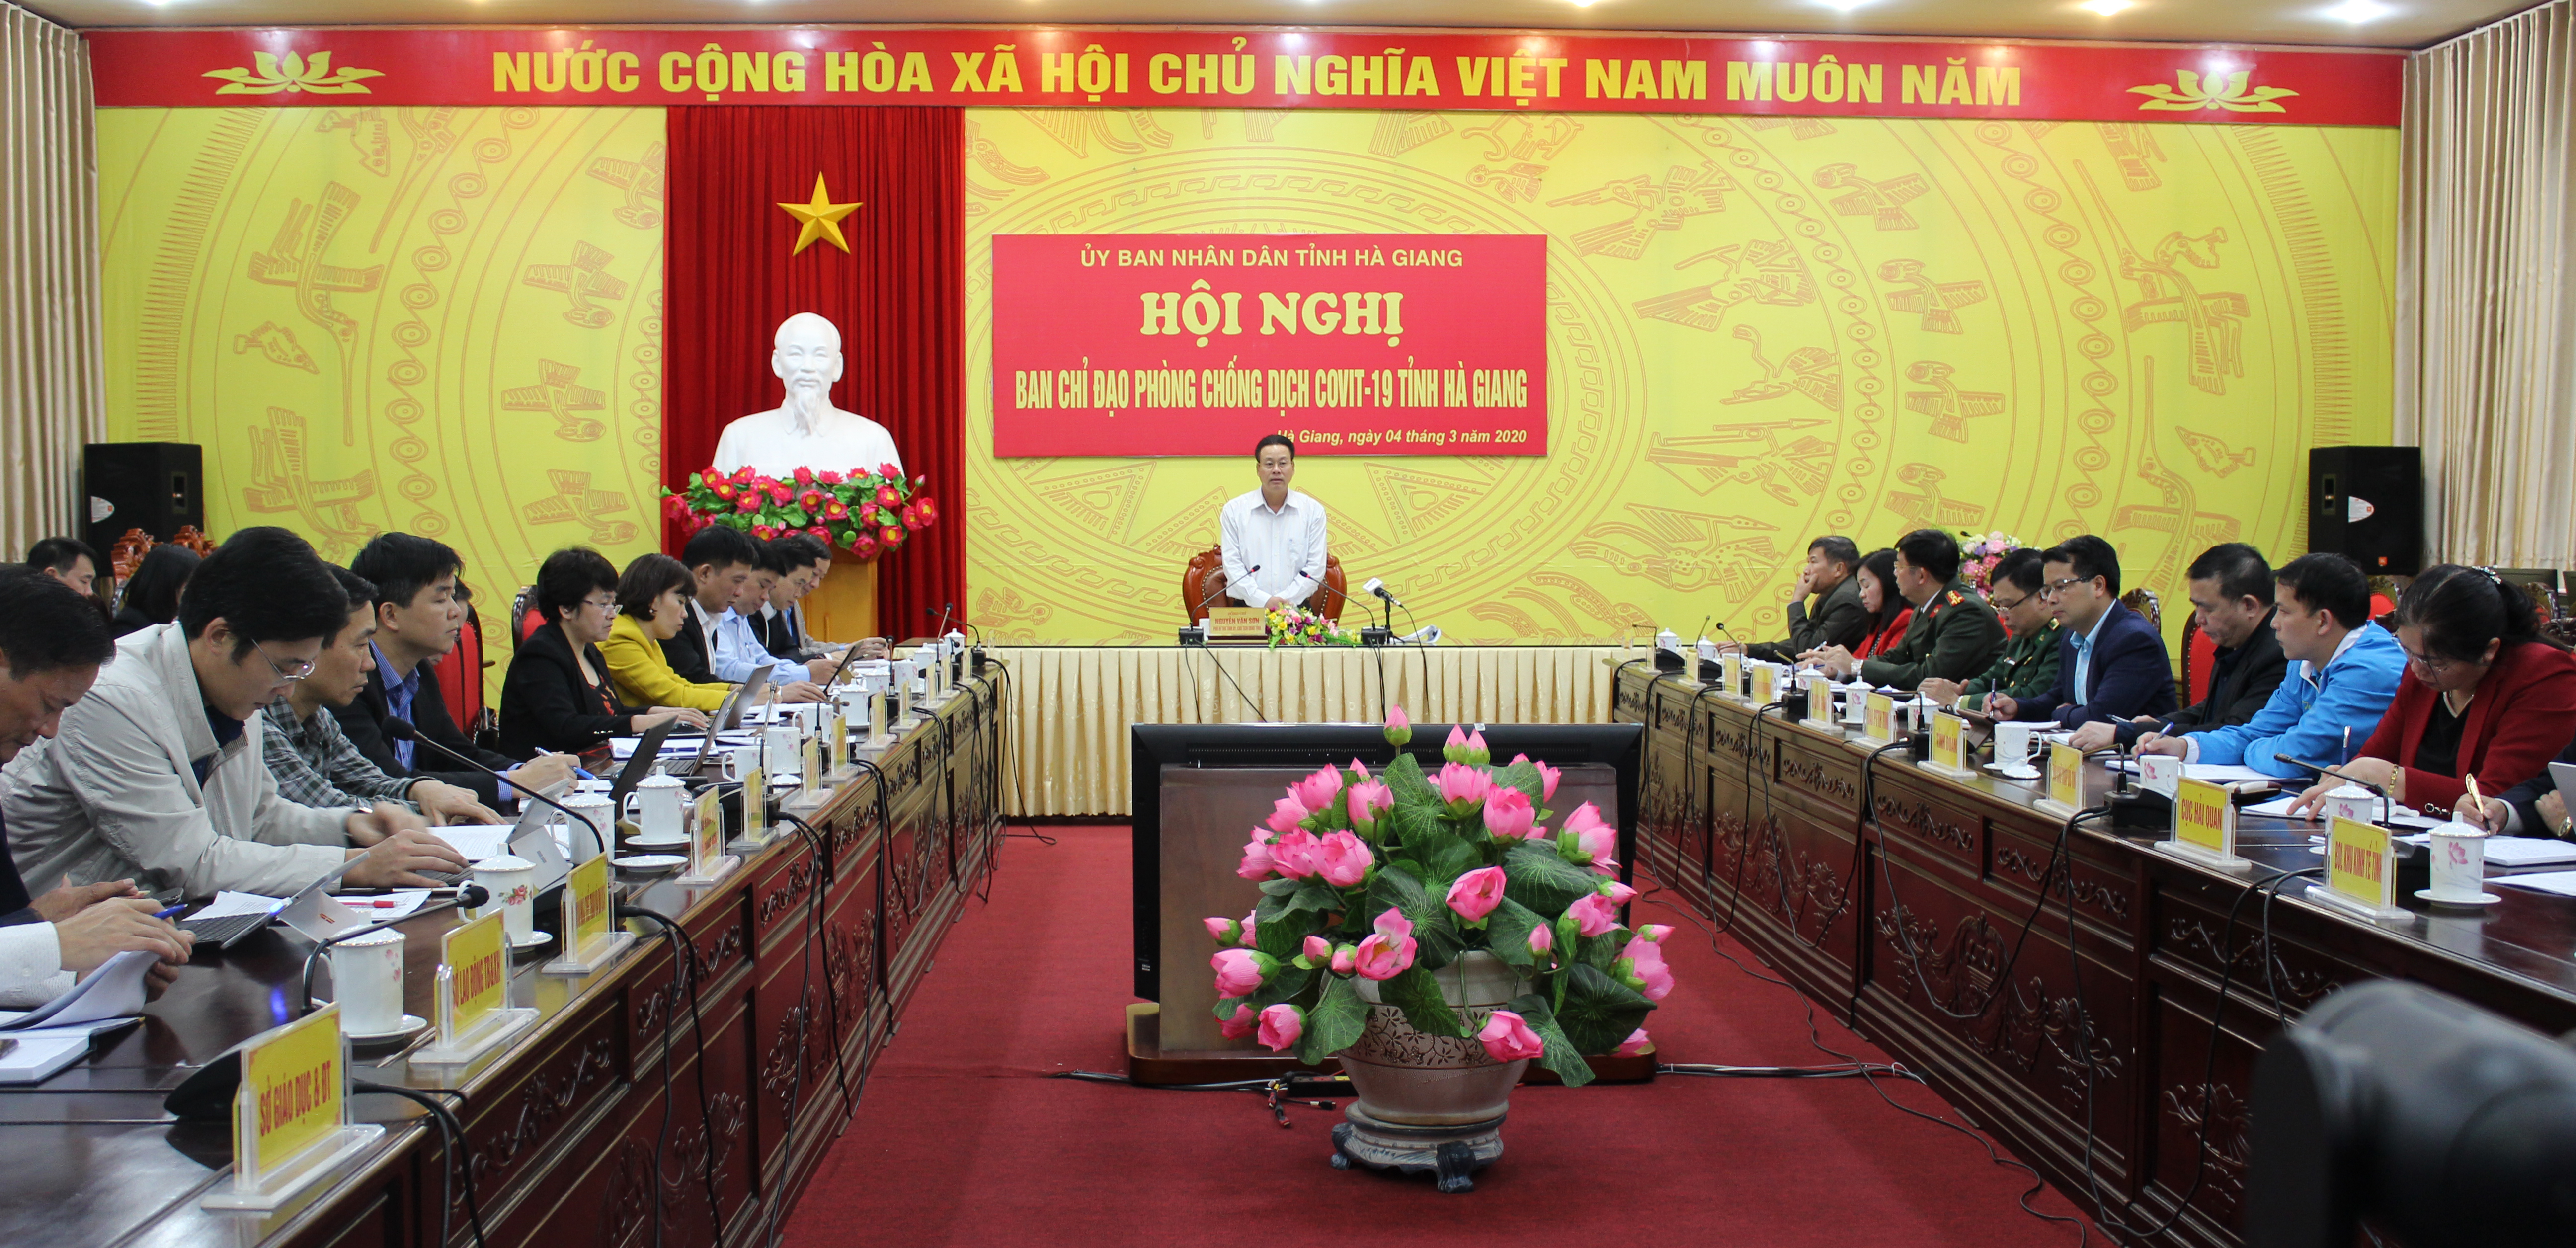 Hội nghị trực tuyến Ban Chỉ đạo phòng chống dịch COVID - 19 tỉnh Hà Giang